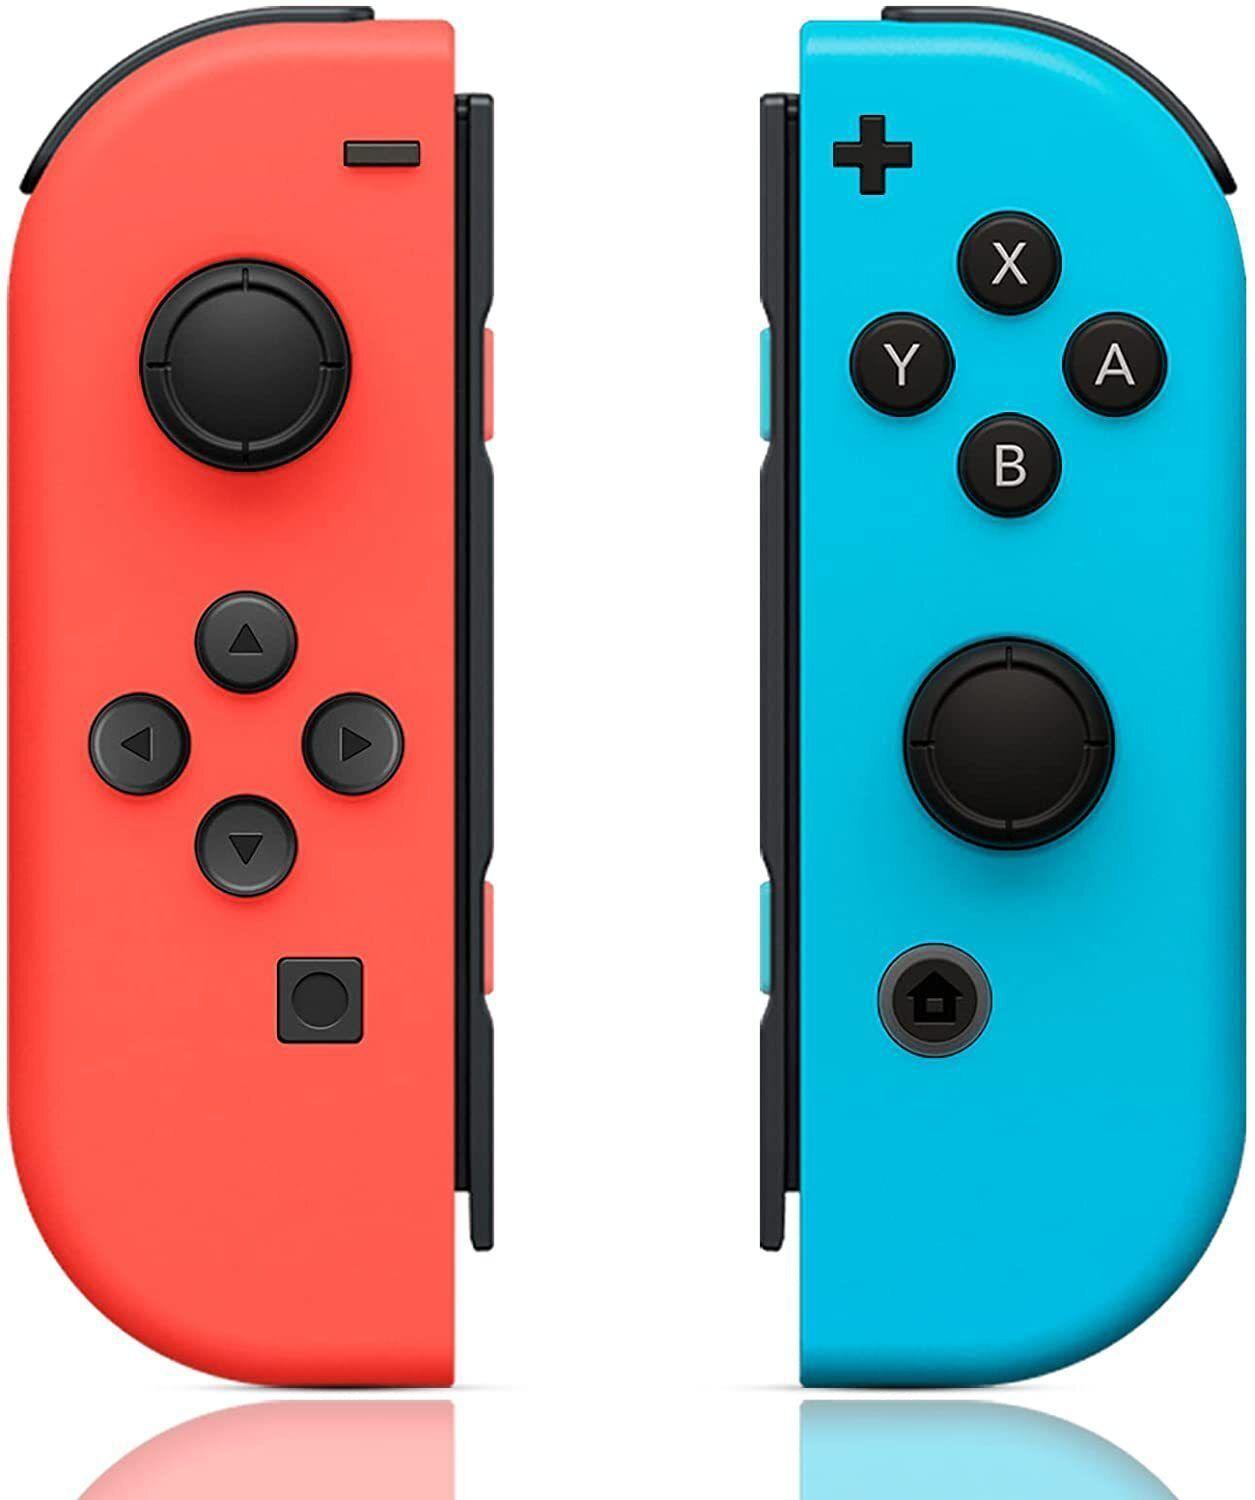 NINTENDO - Console Switch v2 + Joy-Con droit (rouge) et gauche (bleu)